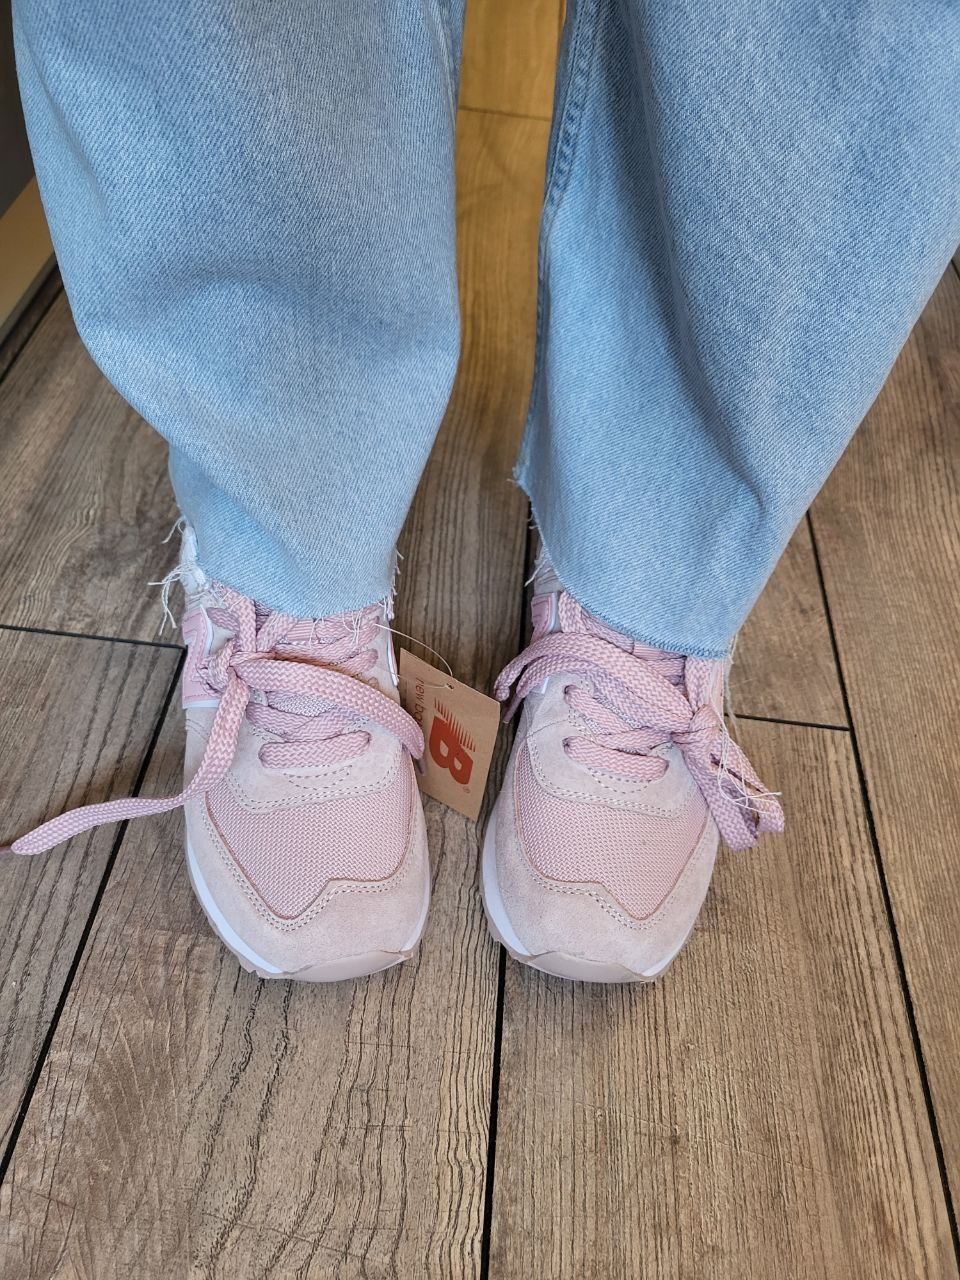 New Balance Classic шкіряні жіночі кросівки, білі й рожеві